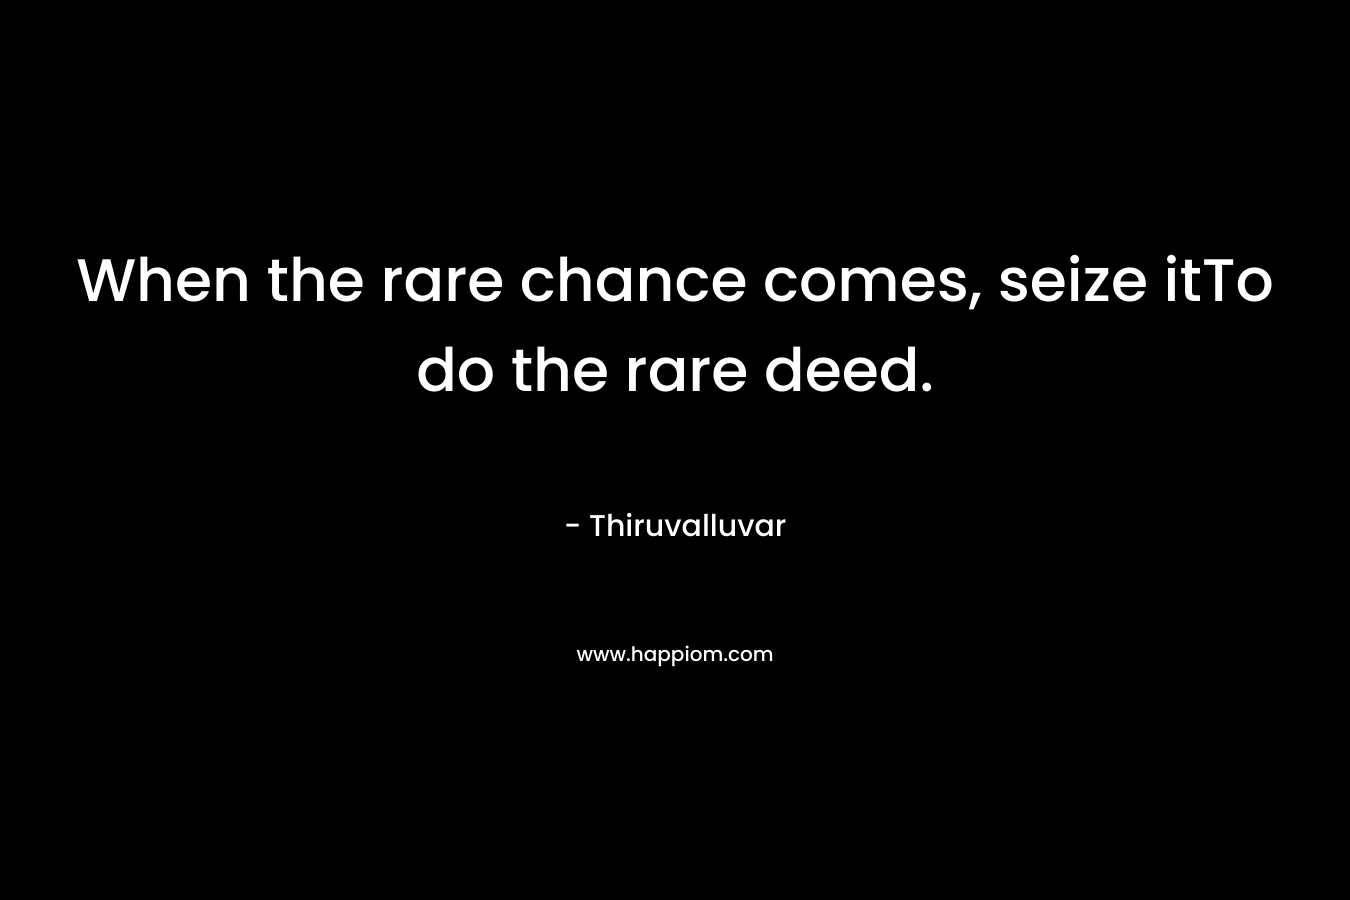 When the rare chance comes, seize itTo do the rare deed.